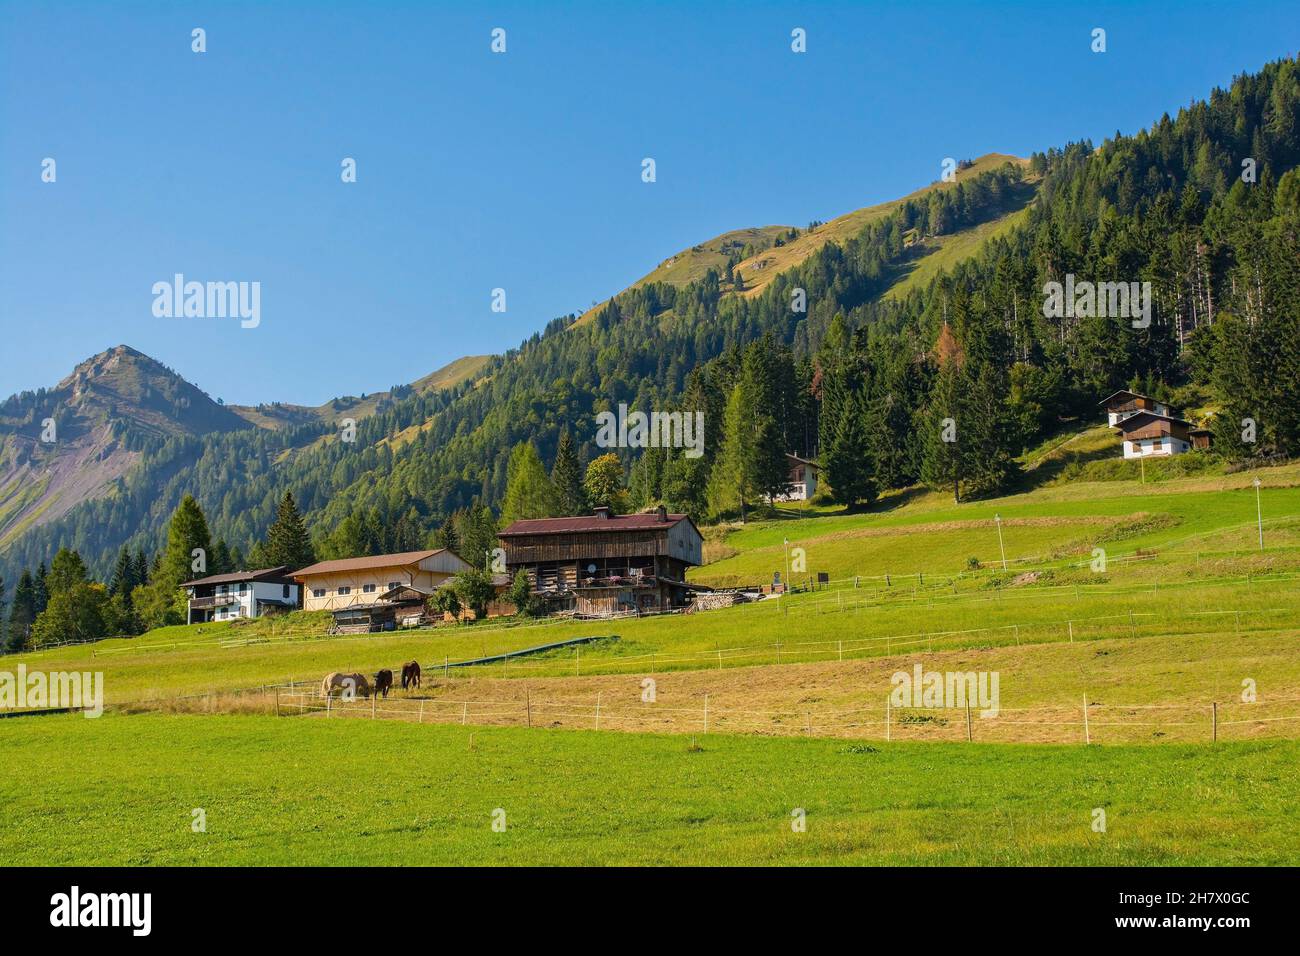 The late summer landscape near the Alpine village of Sauris di Sopra, Udine Province, Friuli-Venezia Giulia, north east Italy Stock Photo